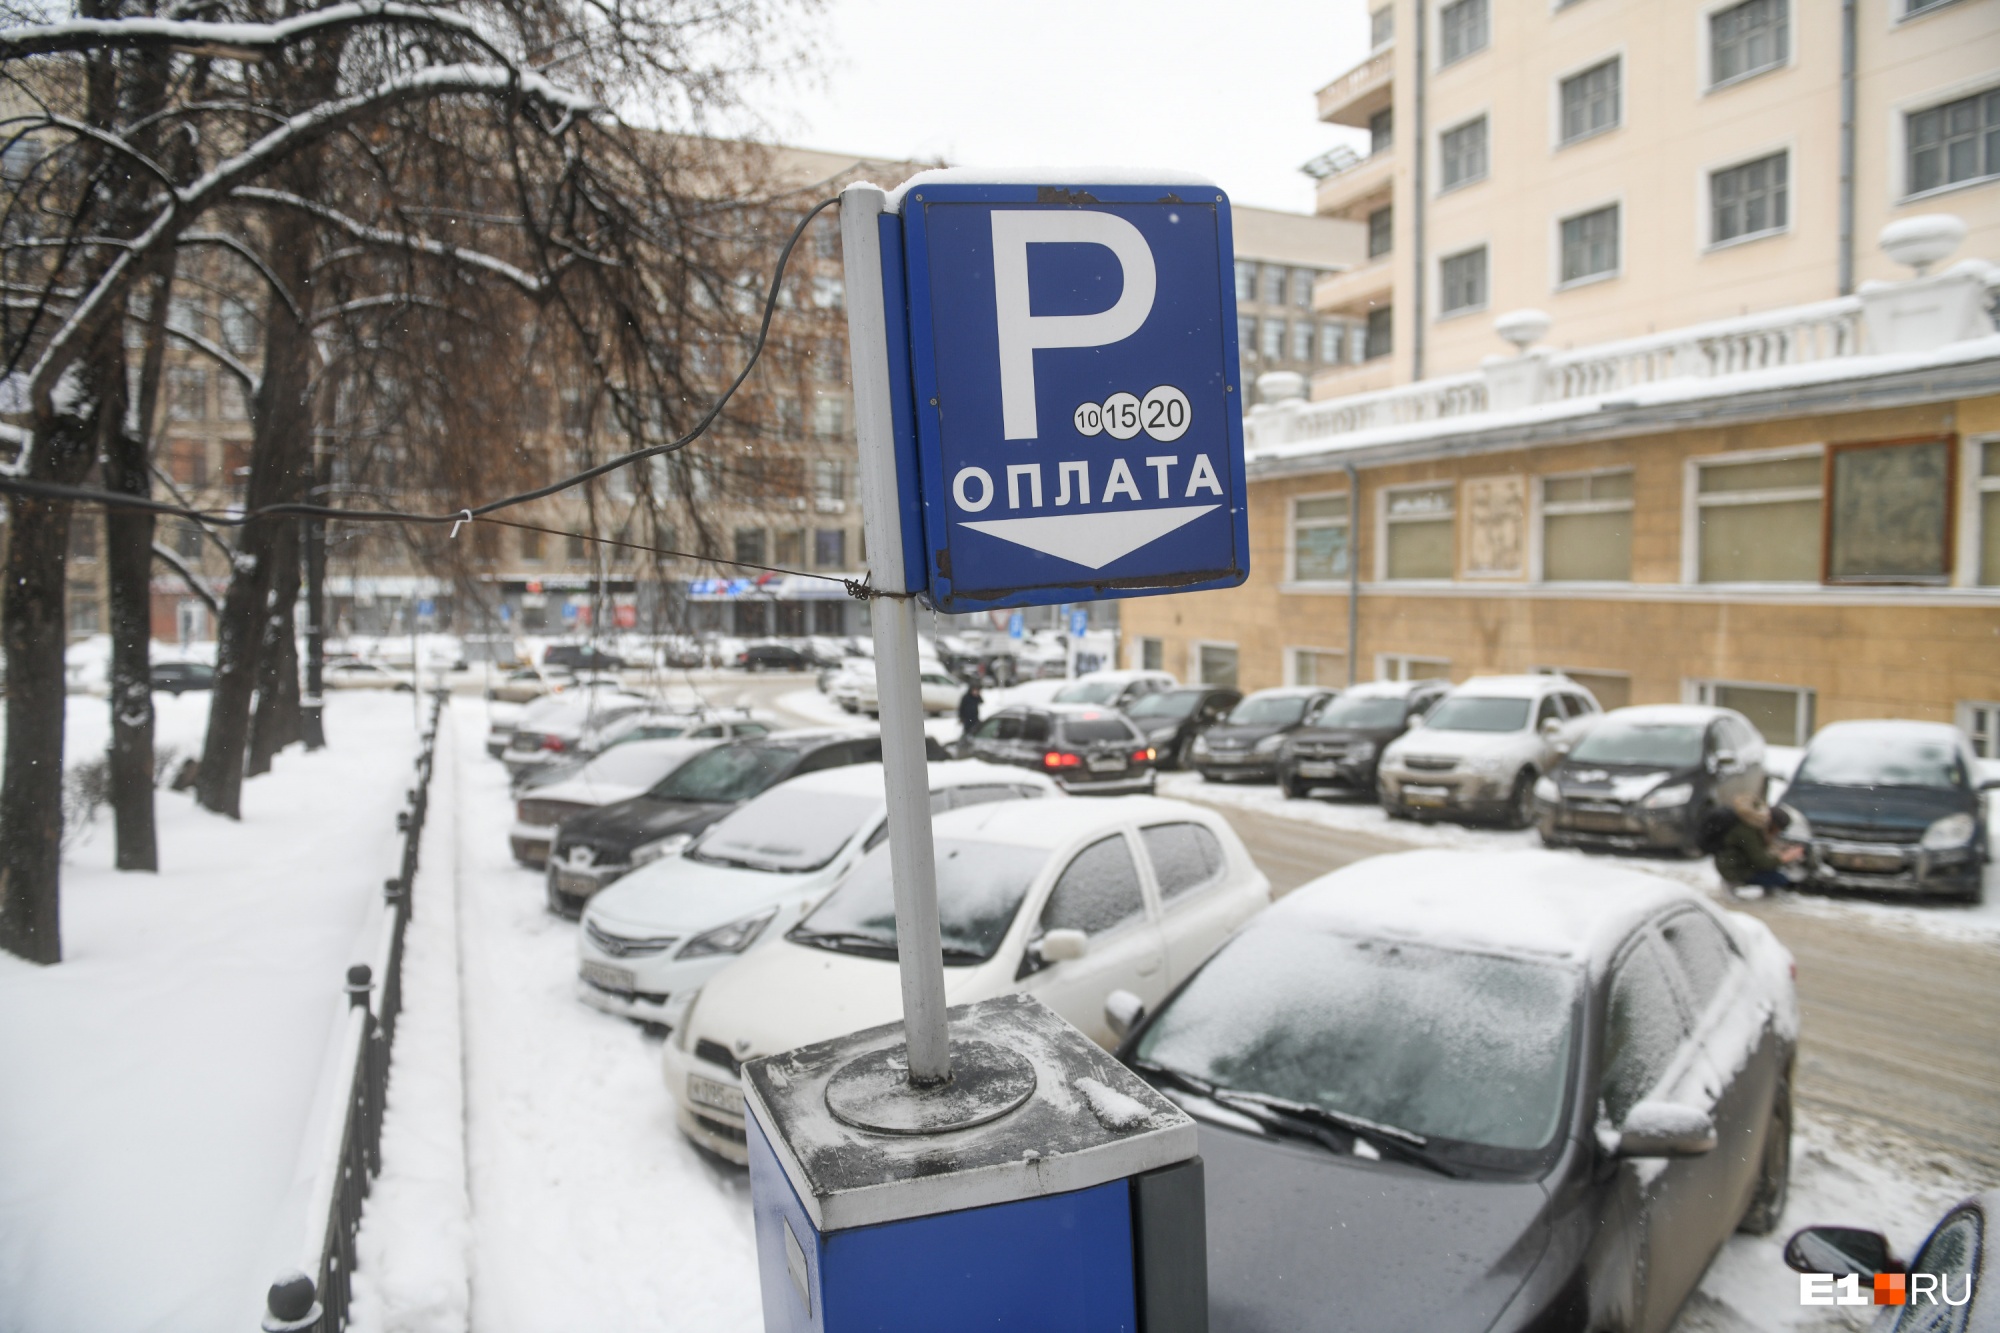 Число водителей, оштрафованных за неоплату парковки в Екатеринбурге, за год выросло в 200 раз